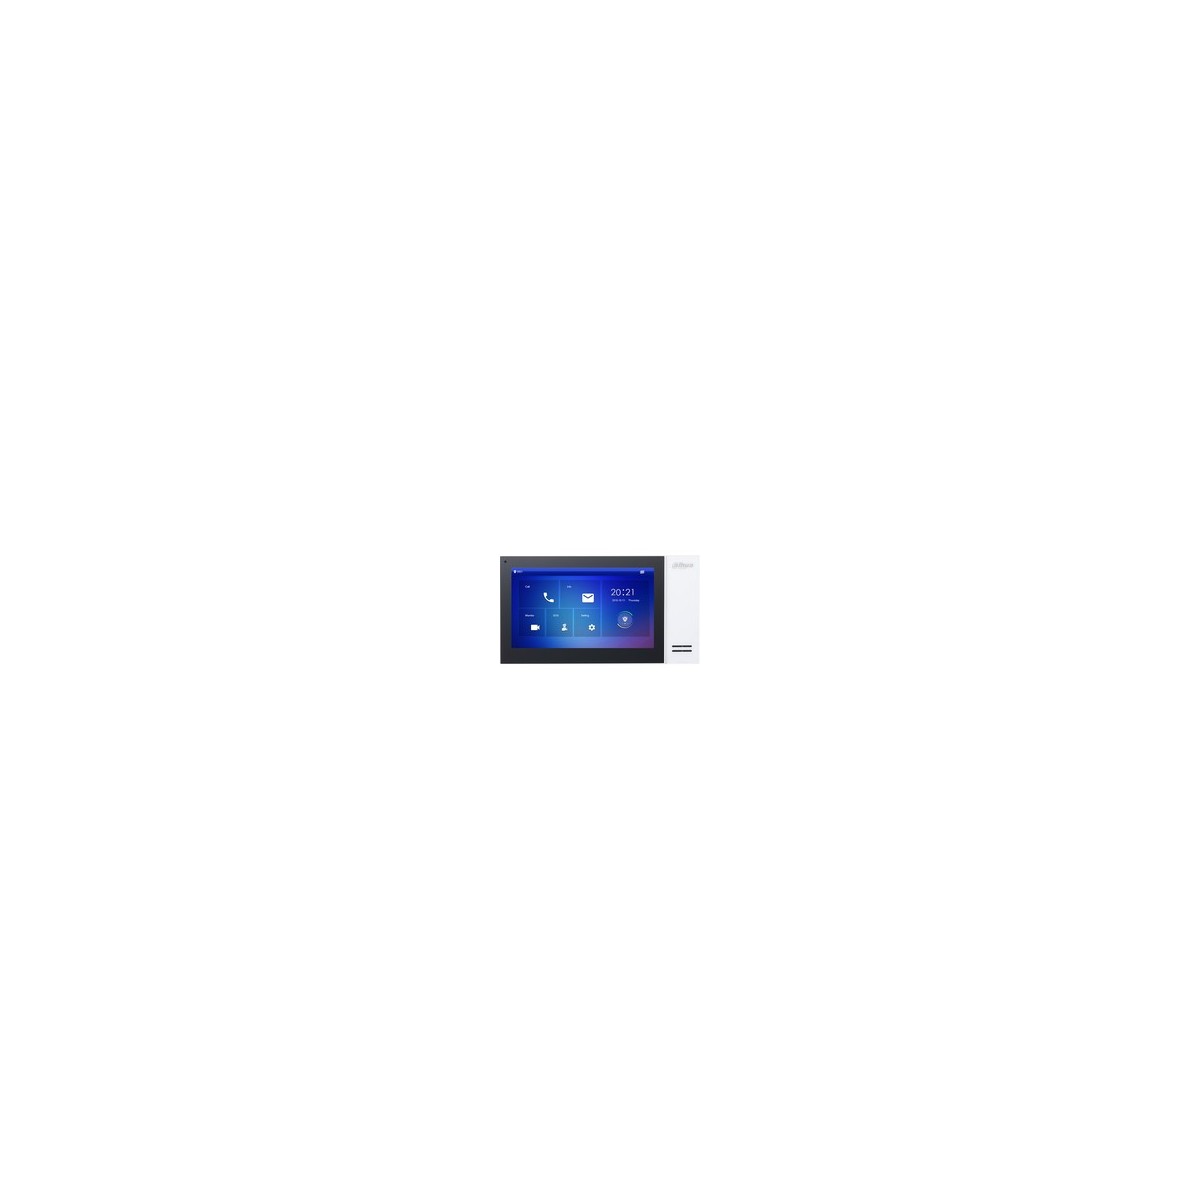 Dahua VTH2421FW-P Videocitofono - Postazione interna - Touch Screen 7 1024x600